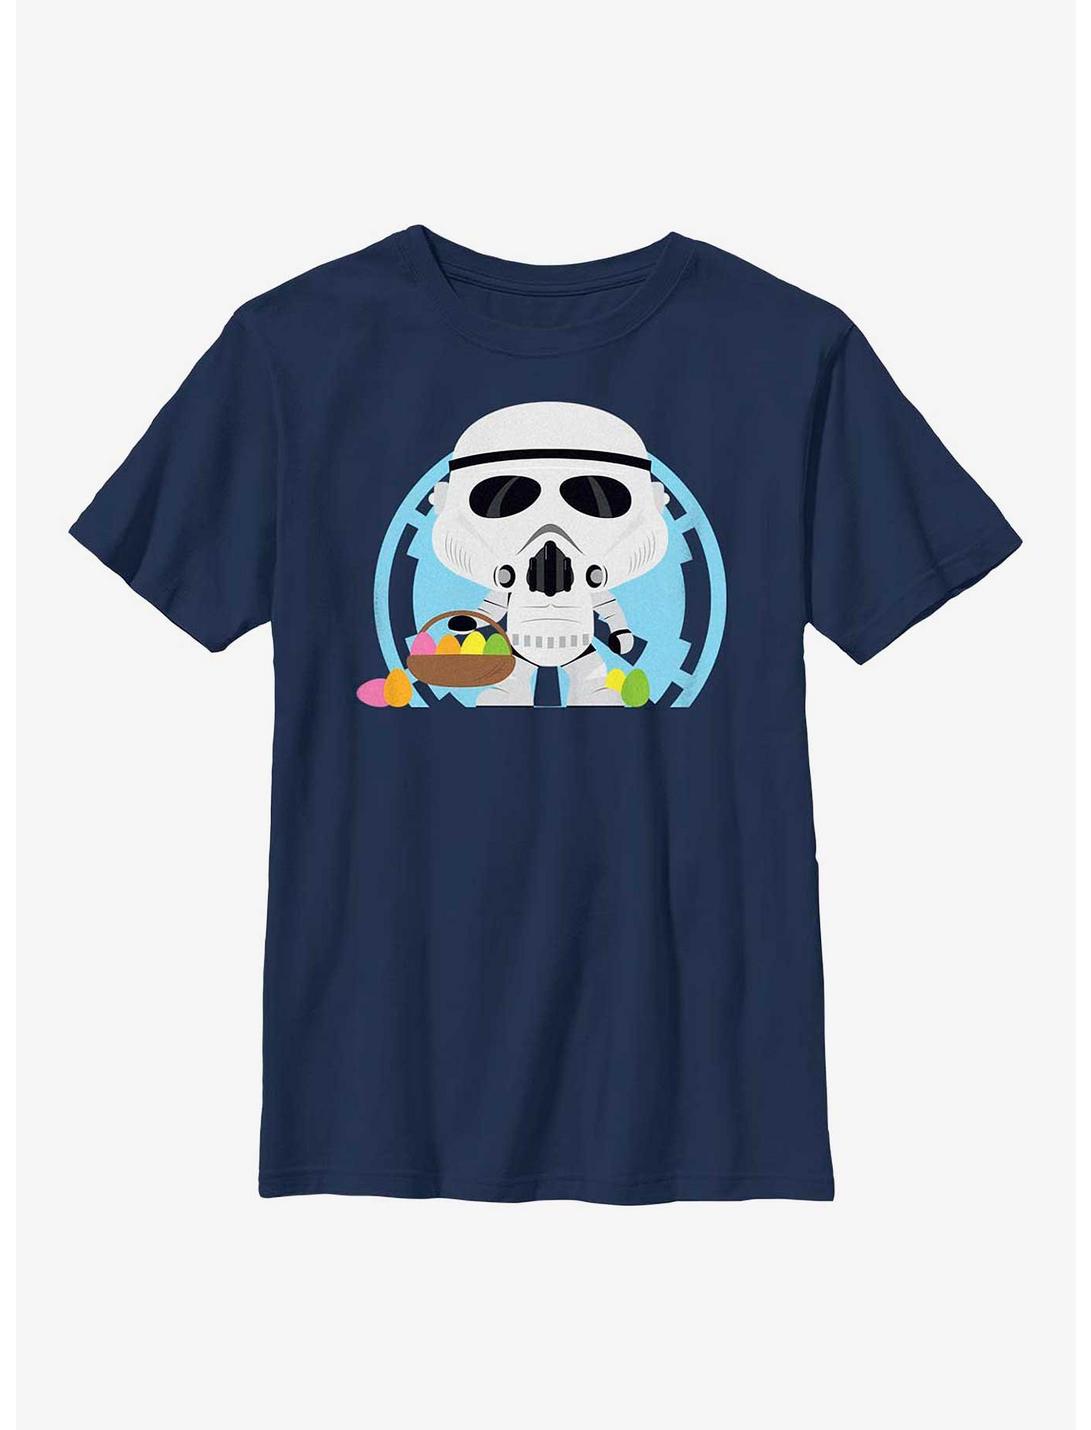 Star Wars Stormtrooper Easter Egg Hunter Youth T-Shirt, NAVY, hi-res